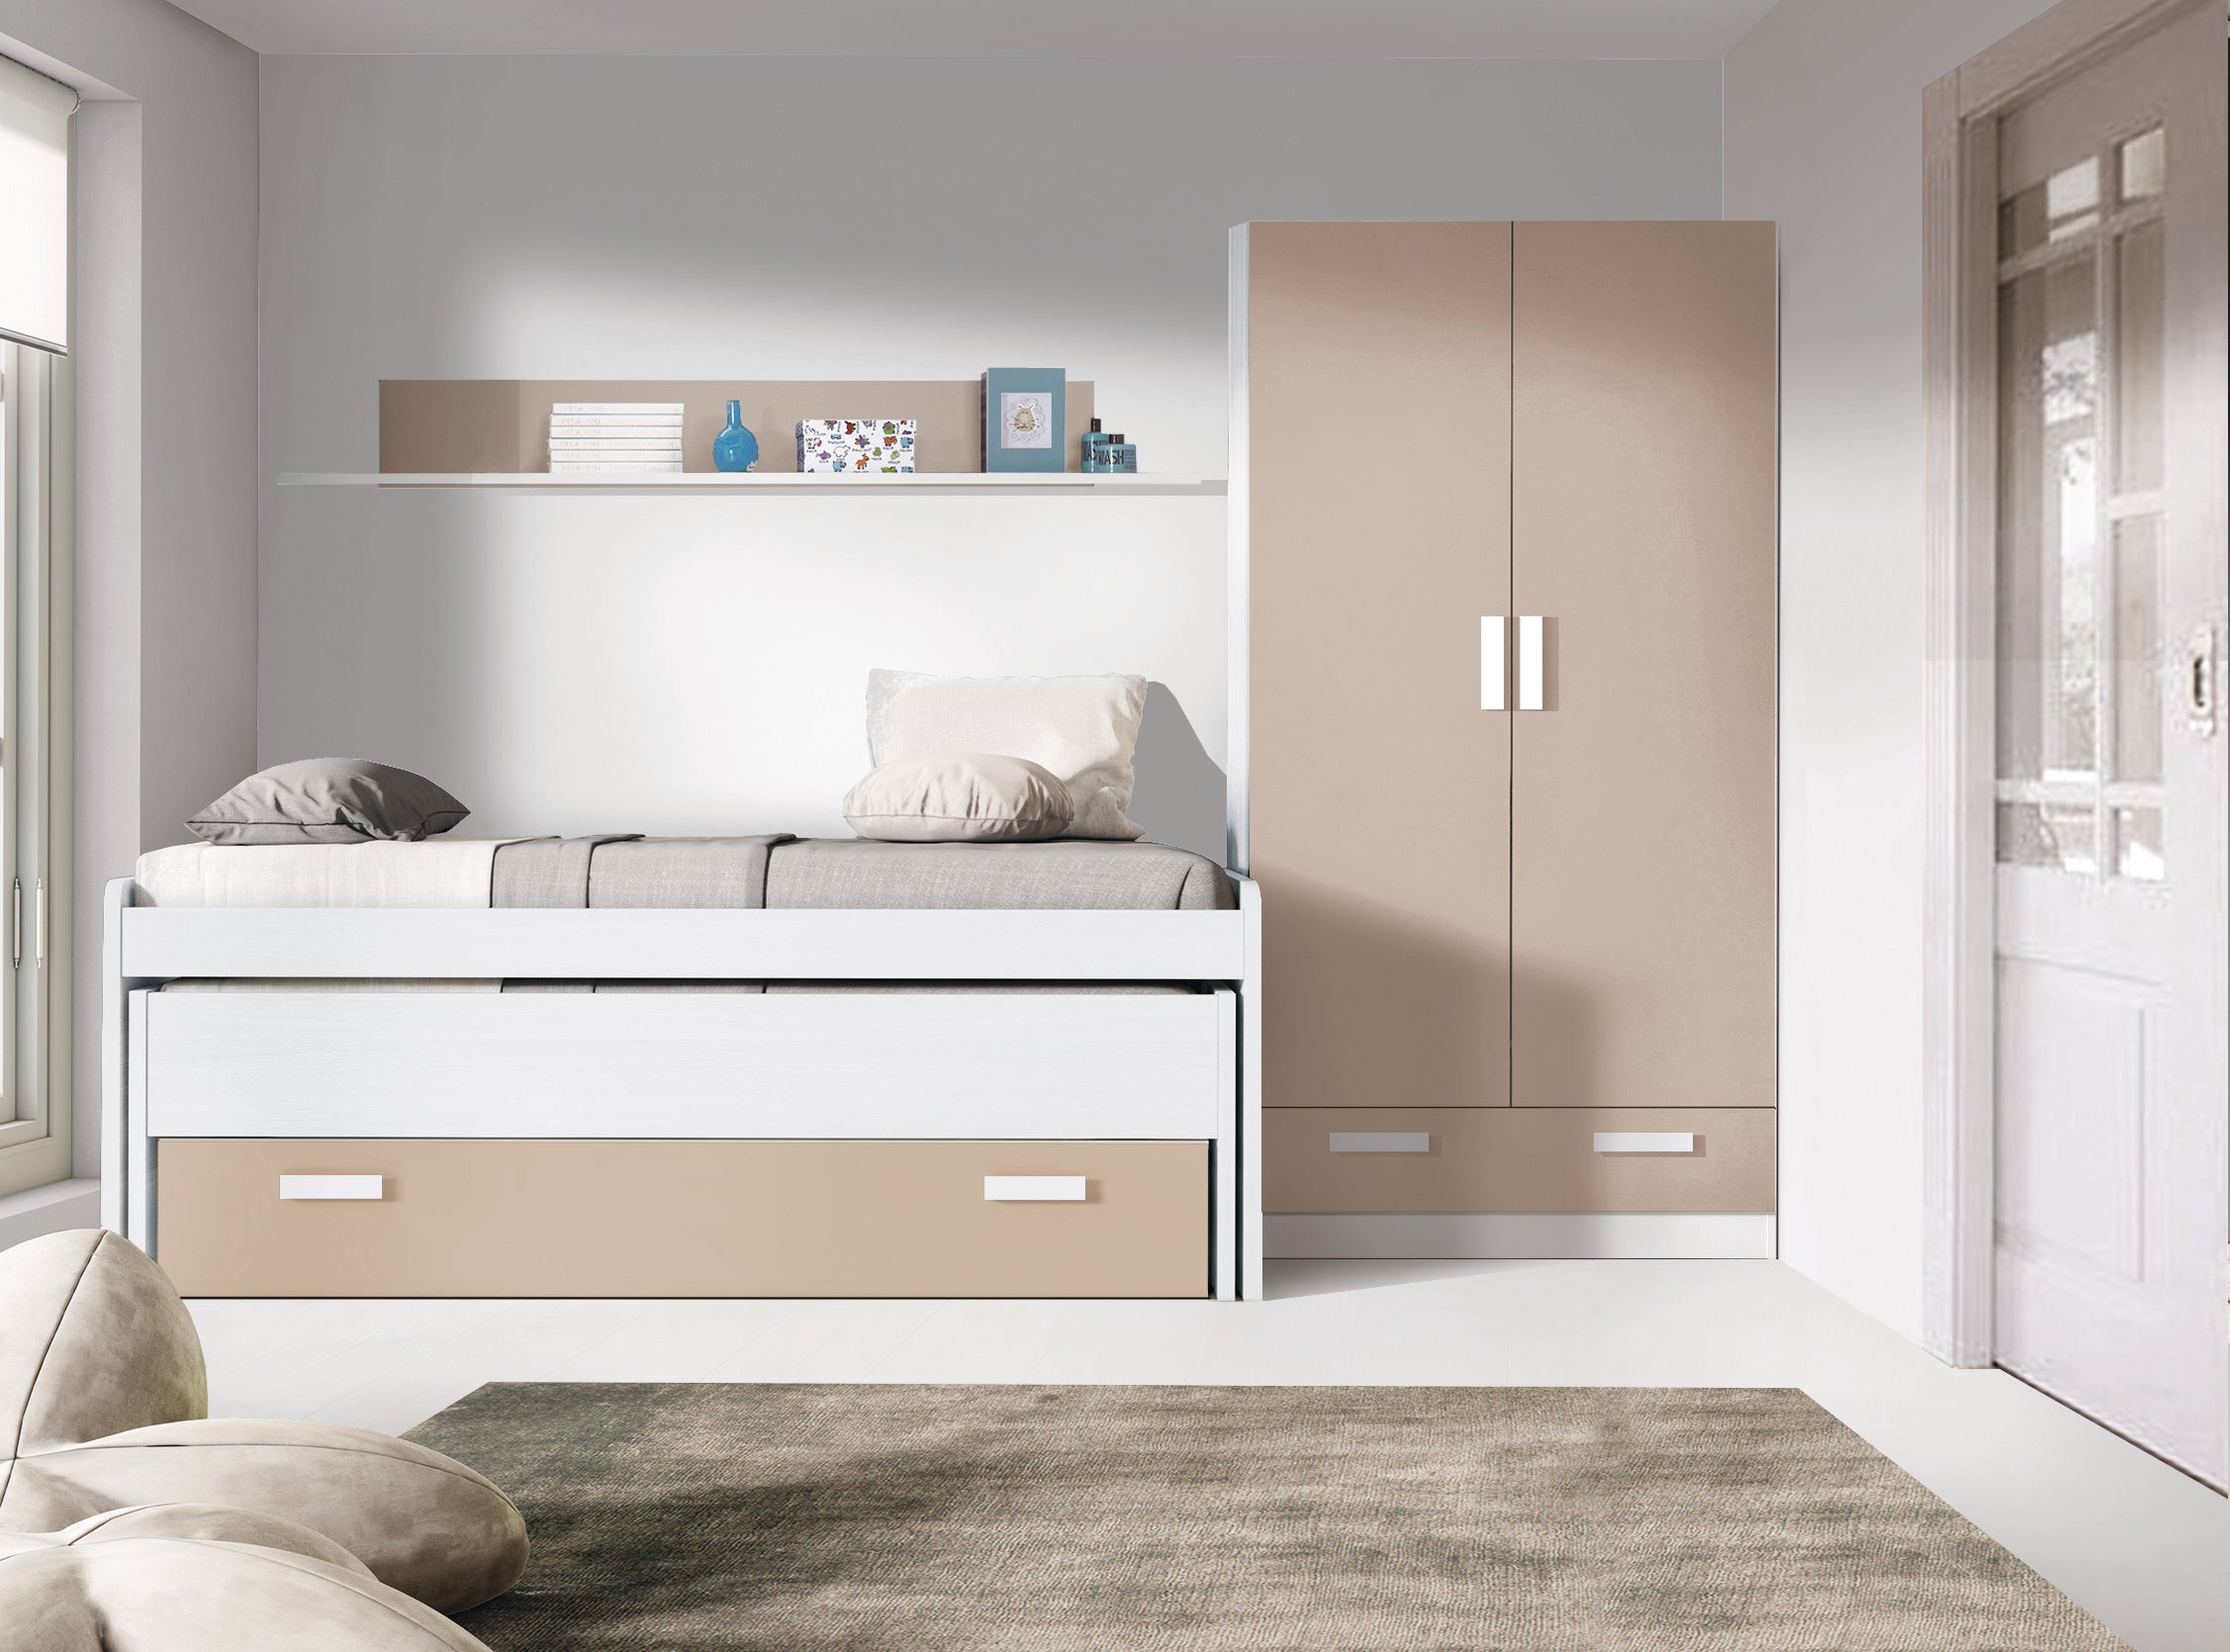 Dormitorio juvenil: cama compacta, armario, escritorio, estanterías - Luddo  20 - Don Baraton: tienda de sofás, colchones y muebles